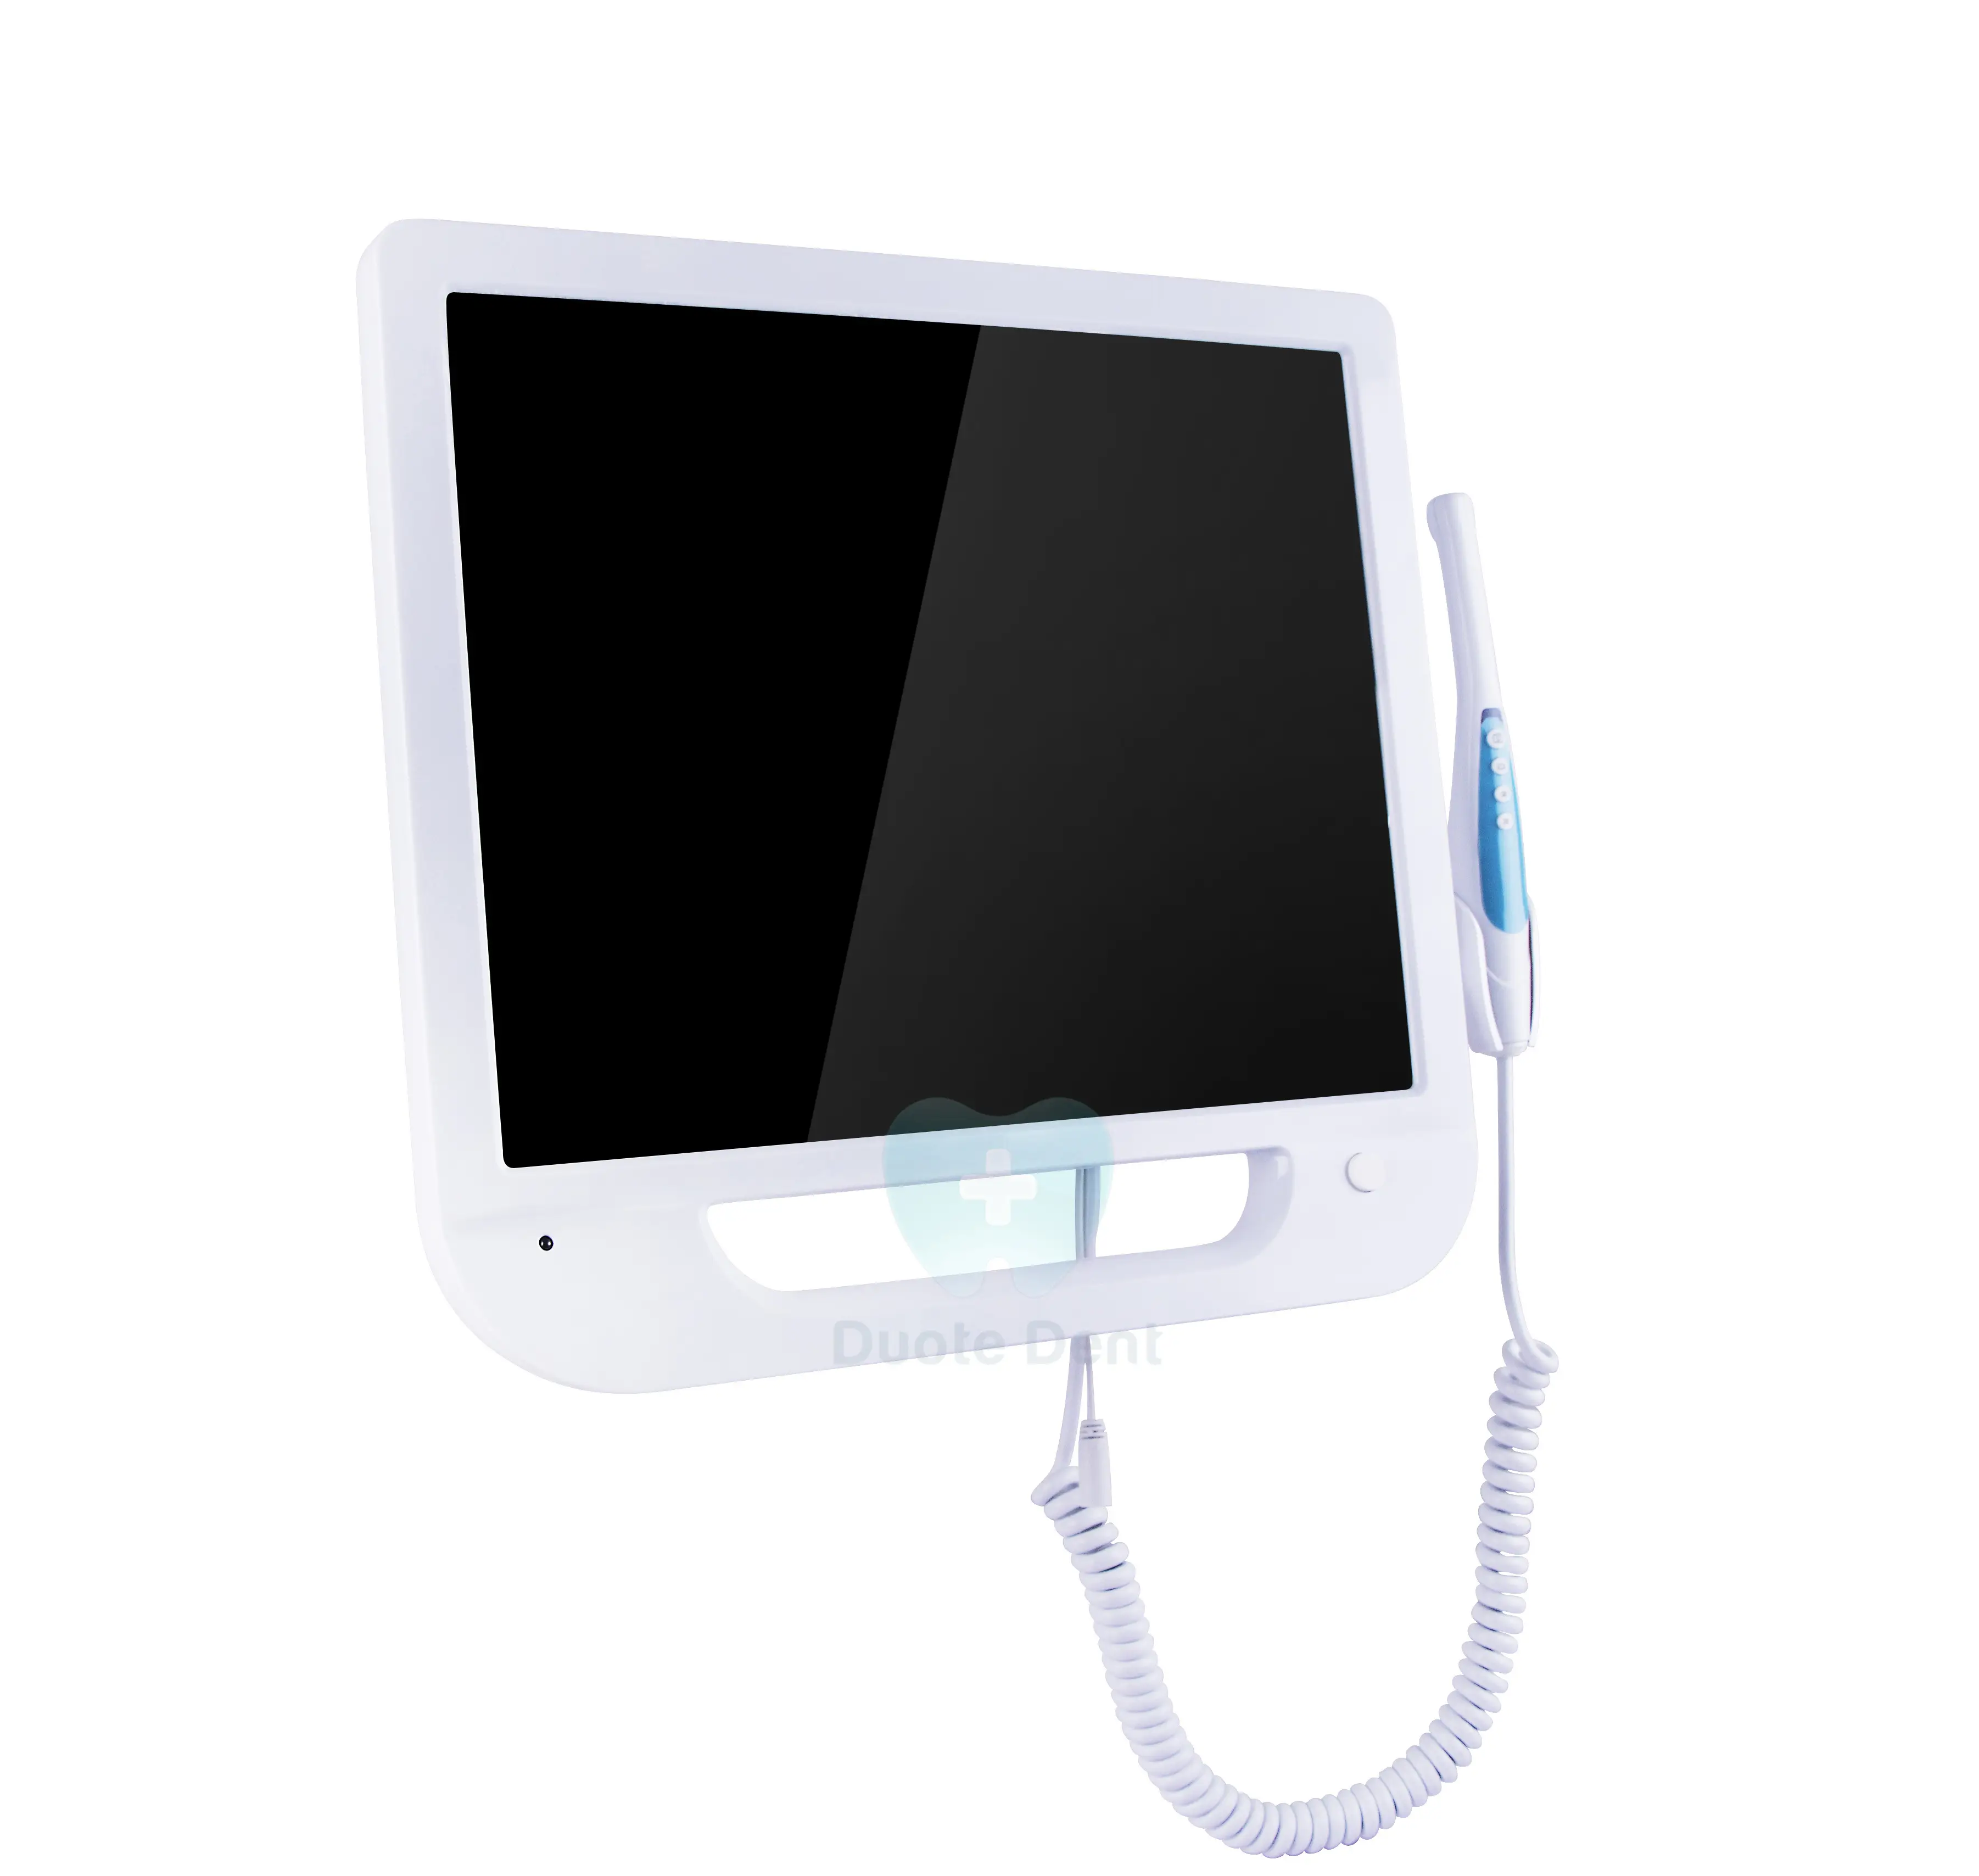 Endoskopi Oral Intra 17 Inci Dental, 5.0 3,0mp Usb dengan Braket Semua Dalam Satu Oral Harga Rendah Kamera dengan Monitor